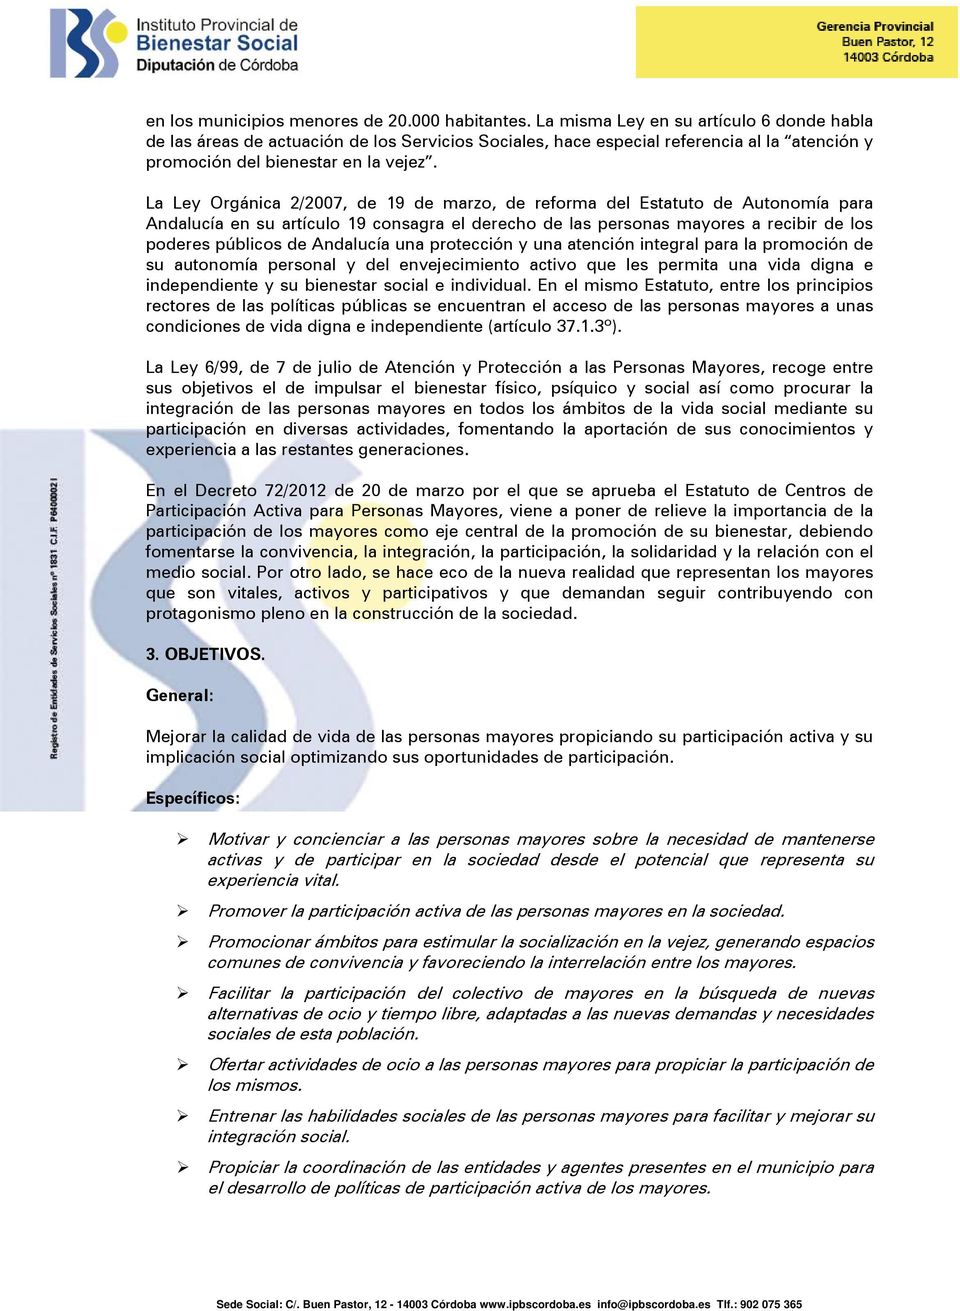 La Ley Orgánica 2/2007, de 19 de marzo, de reforma del Estatuto de Autonomía para Andalucía en su artículo 19 consagra el derecho de las personas mayores a recibir de los poderes públicos de